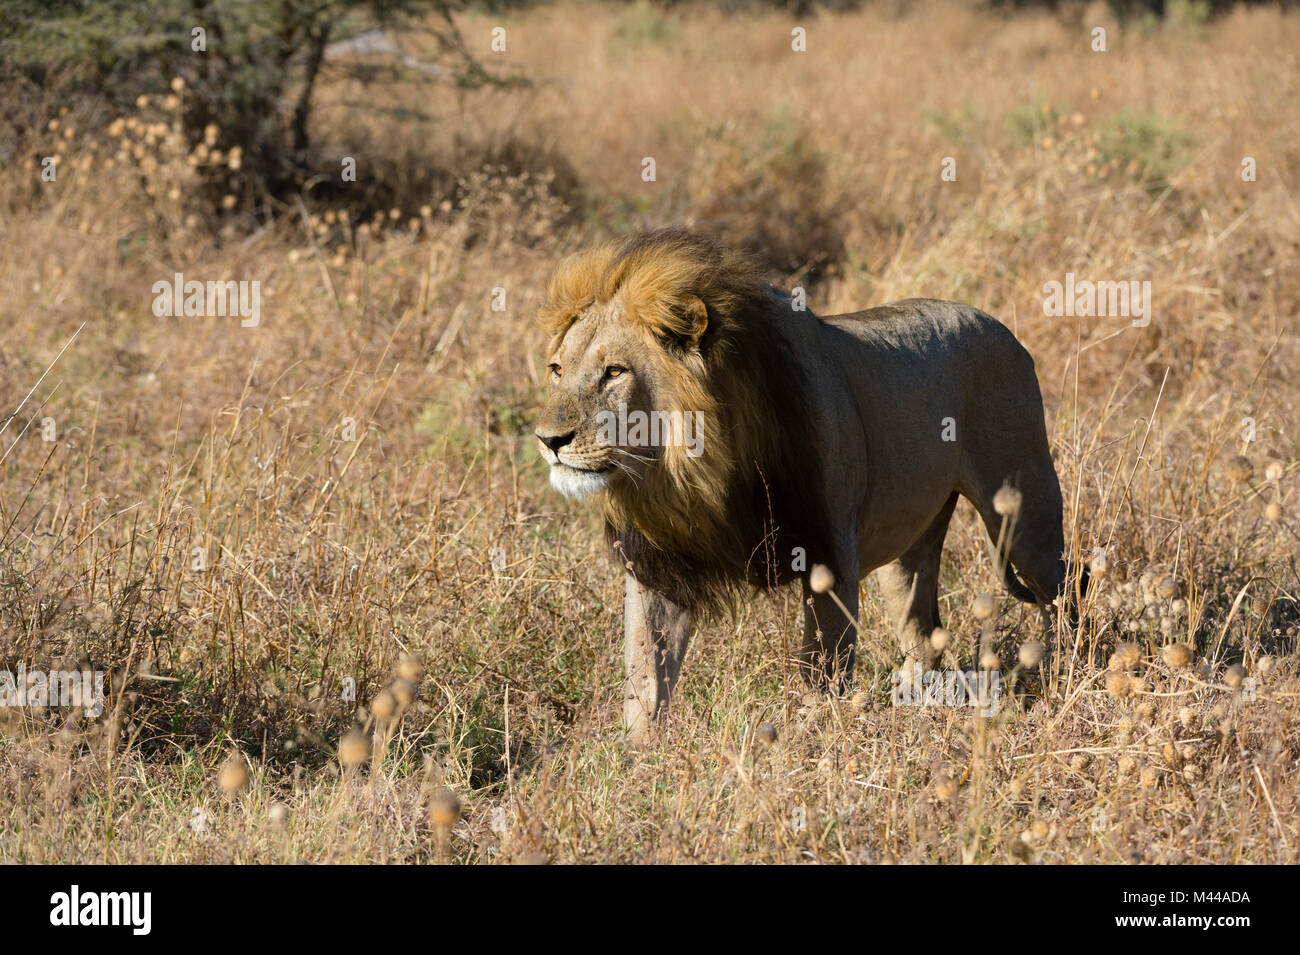 Lion (Panthera leo) walking in grassland, Savuti, Chobe National Park, Botswana Stock Photo